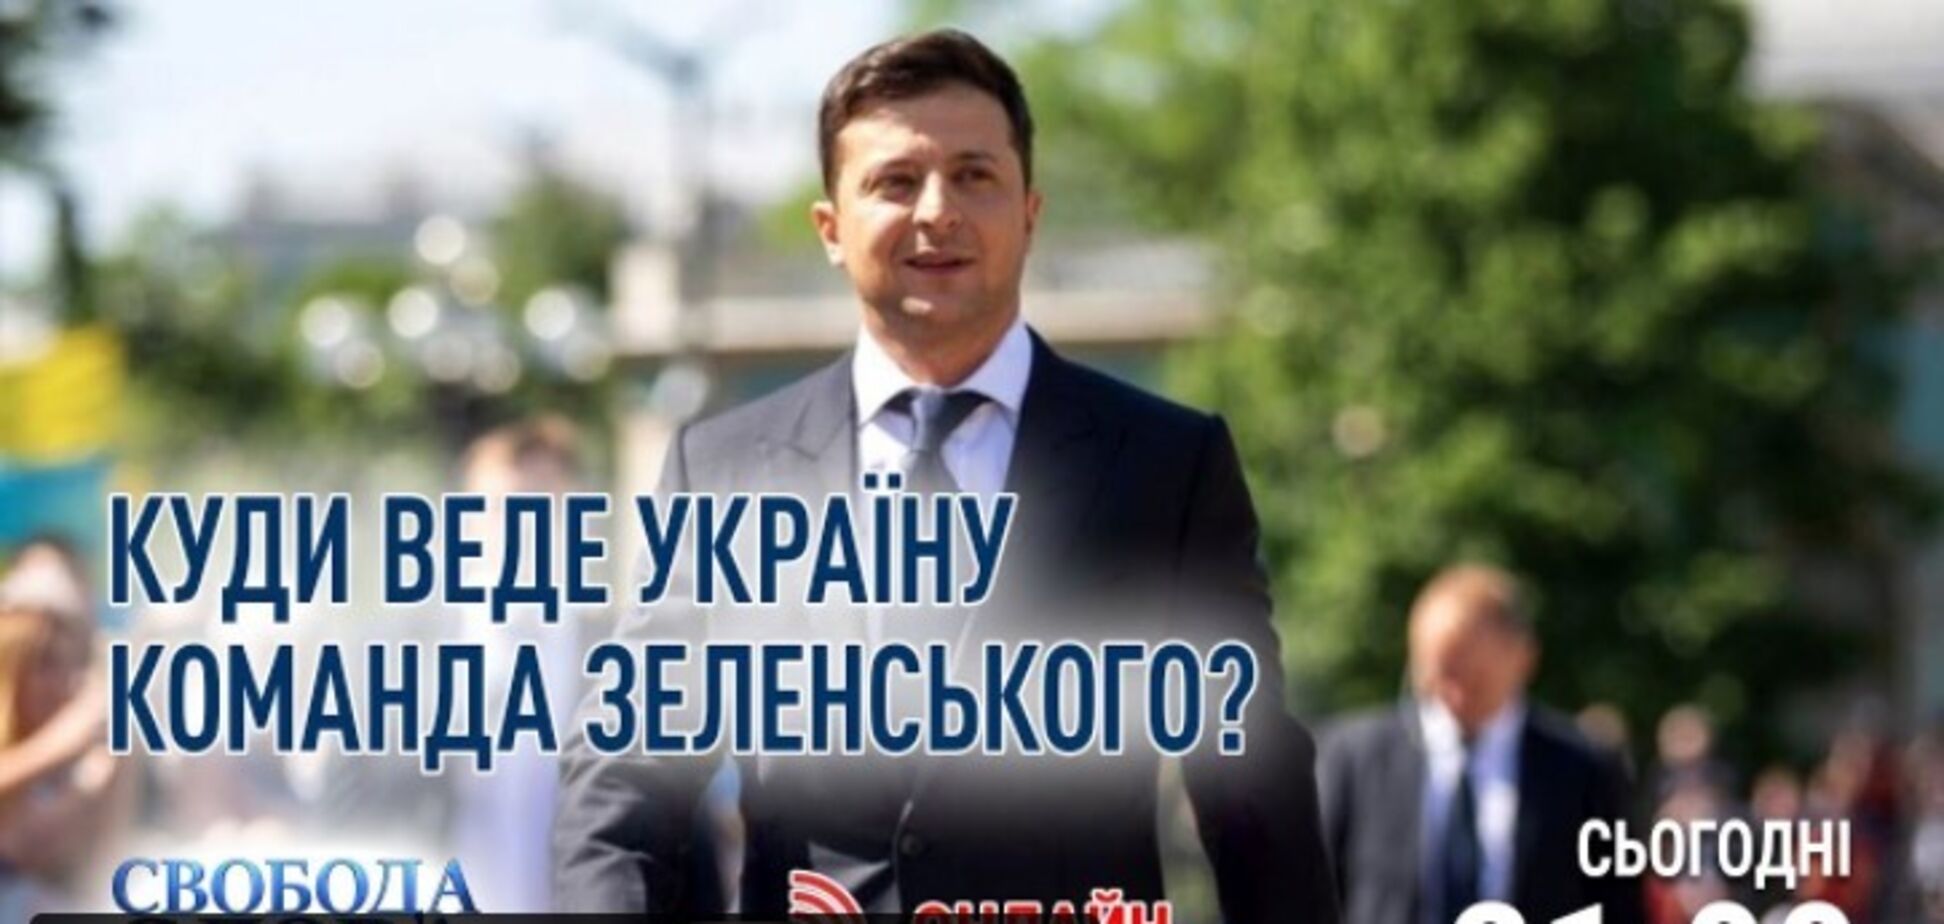 Тема нового ефіру 'Свободи слова Савіка Шустера' – 'Куди веде Україну команда Зеленського'